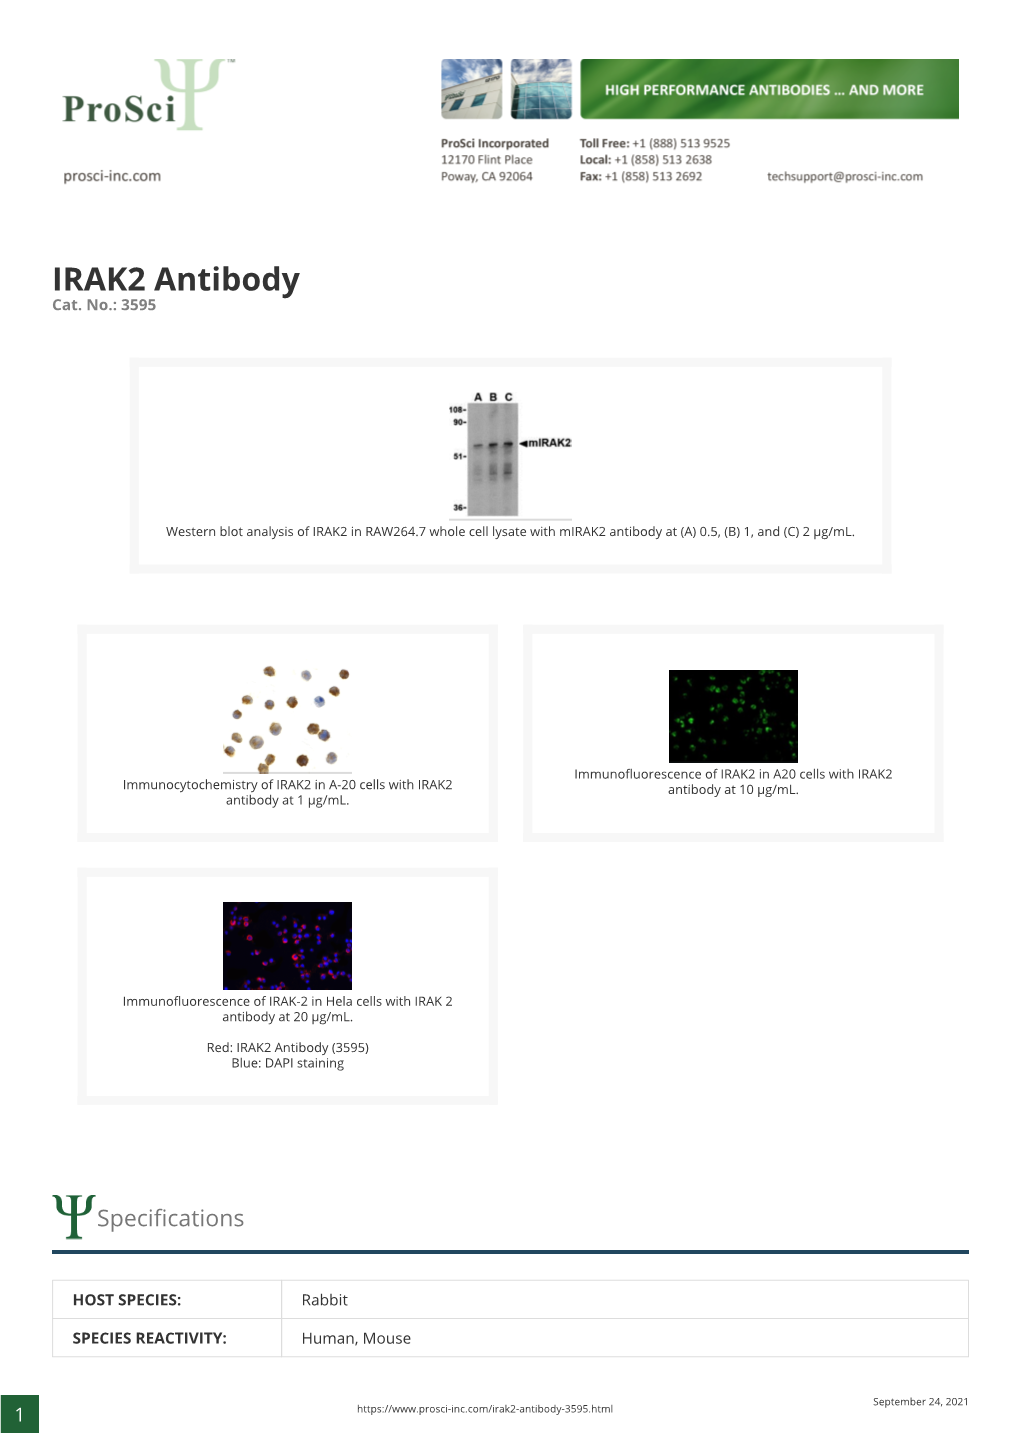 IRAK2 Antibody Cat